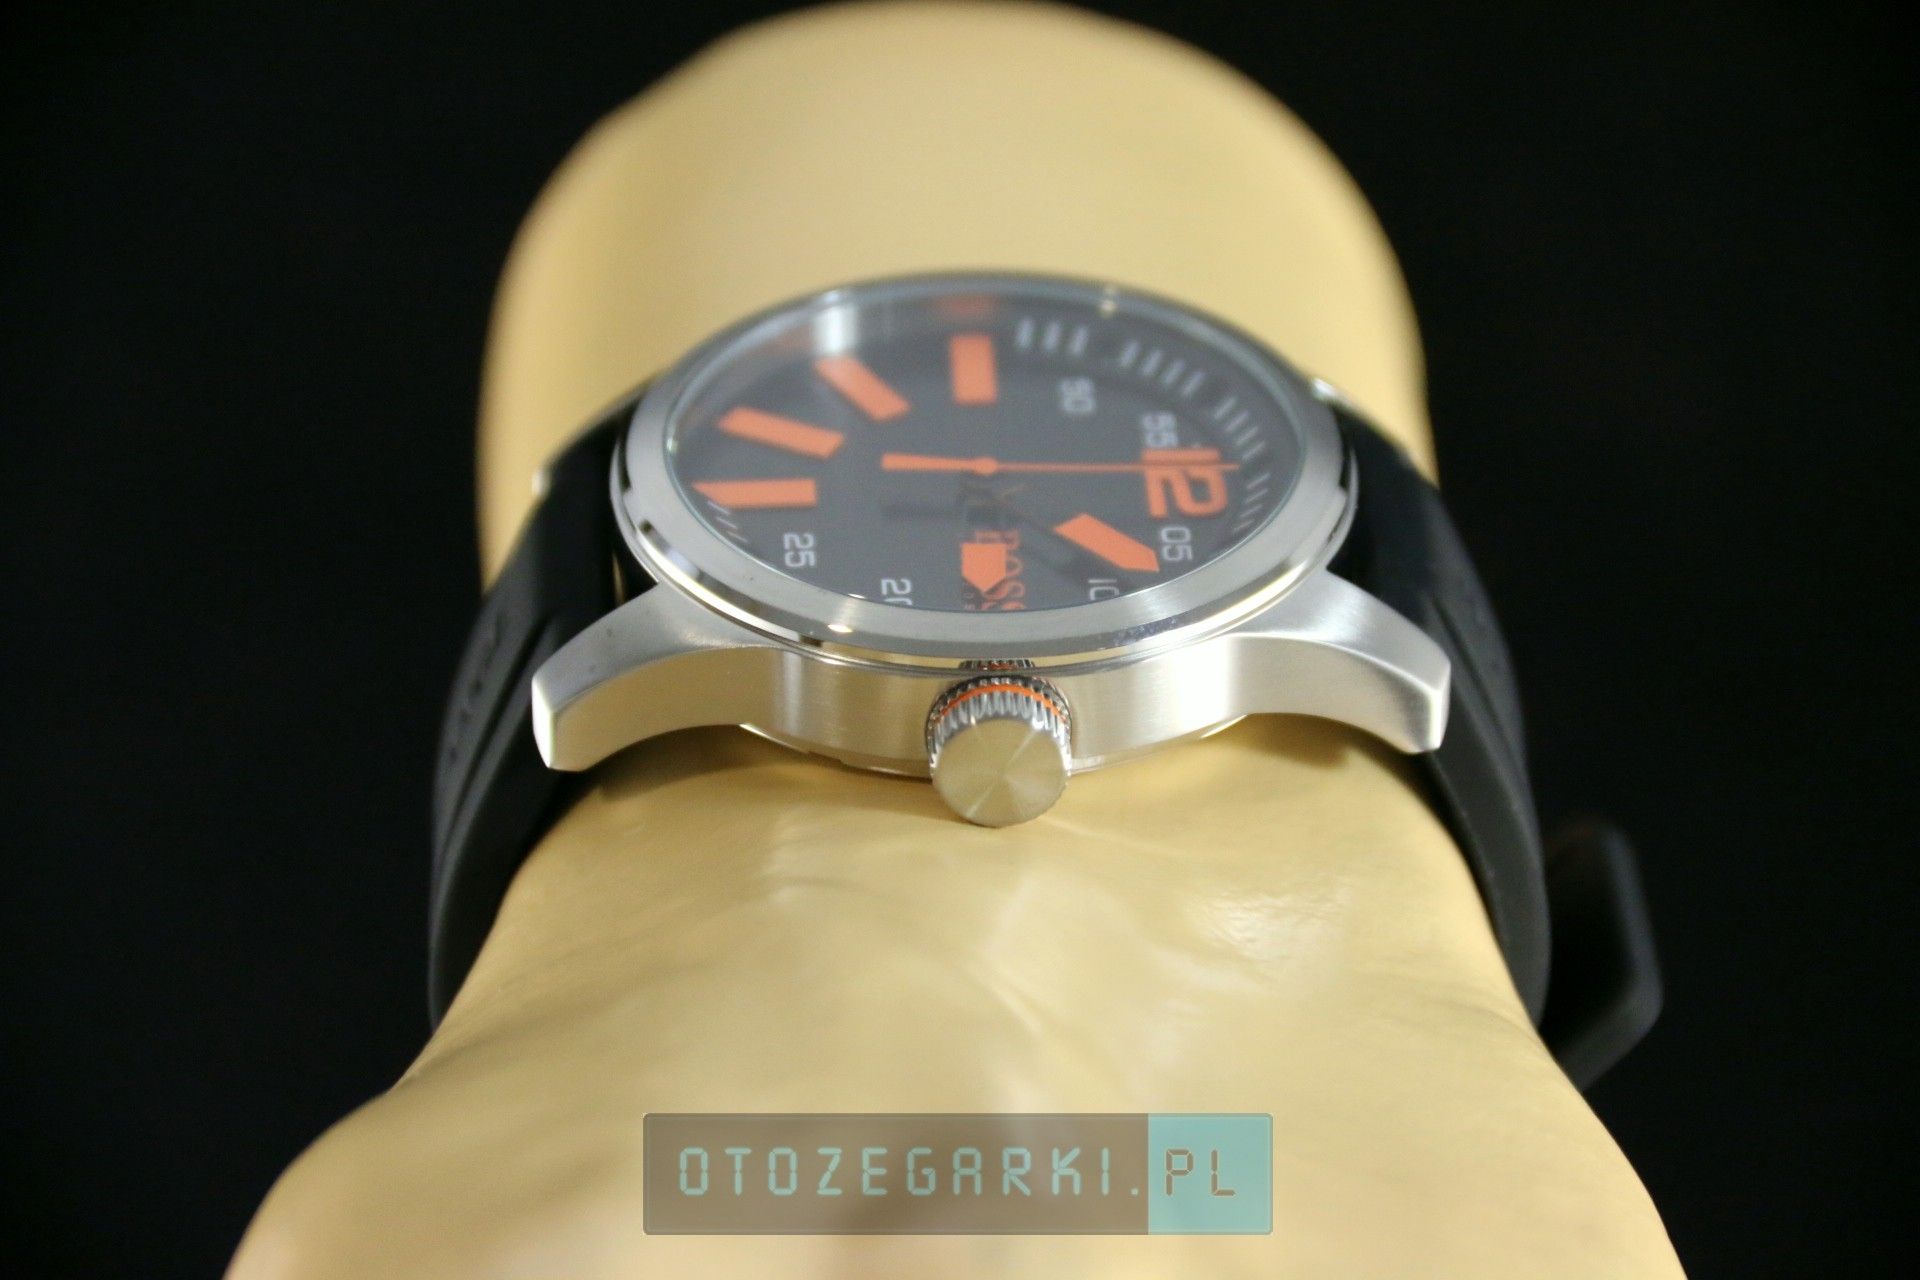 Hugo Boss 1513059 - Zegarek Męski Hugo Boss Orange Paris - 450,00 zł -  Otozegarki.pl